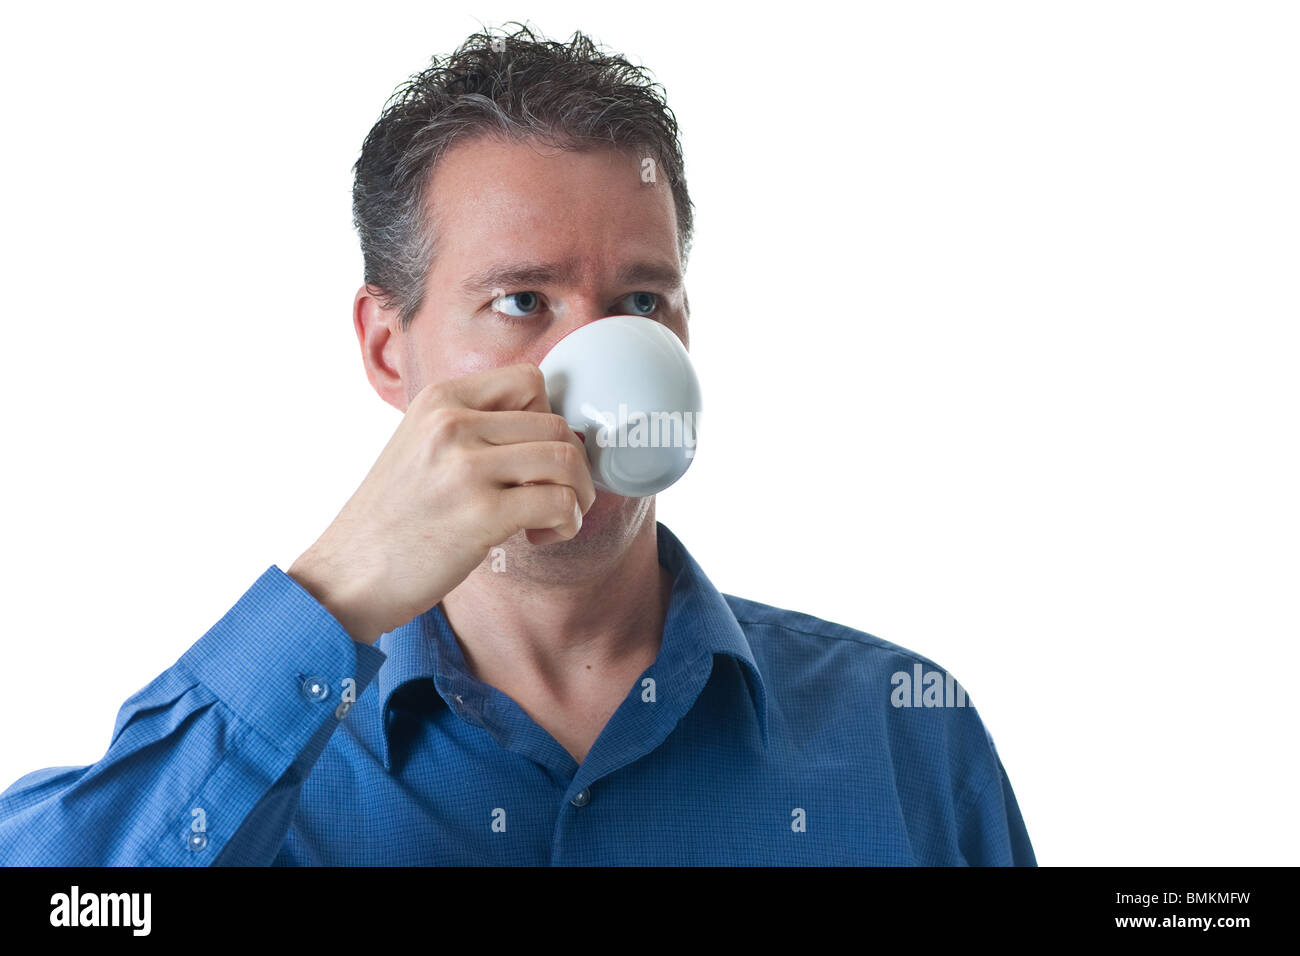 Ein Mann in einem blauen Kleid Shirt, trinken aus einem kleinen Cappuccino / Coffee Cup, isoliert auf weiss. Stockfoto